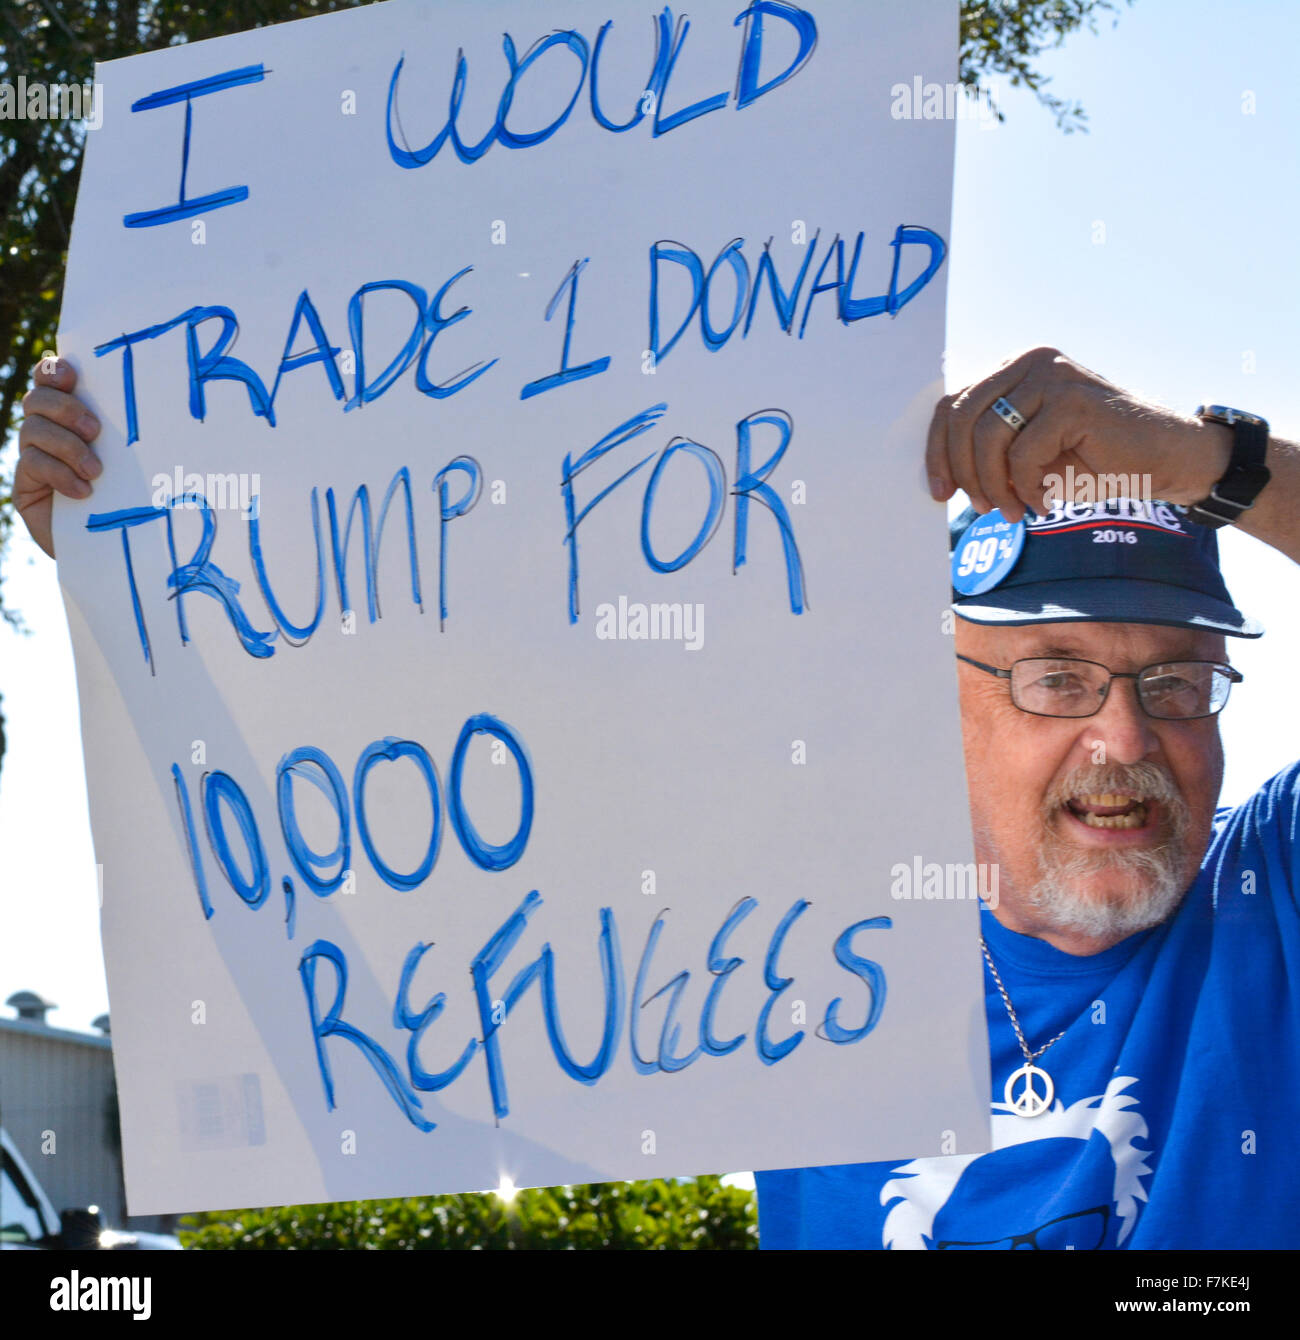 Un hombre que llevaba un sombrero de Bernie Sanders tiene un signo de protesta en relación con Donald Trump su posición sobre los refugiados sirios en un GOP rally Foto de stock